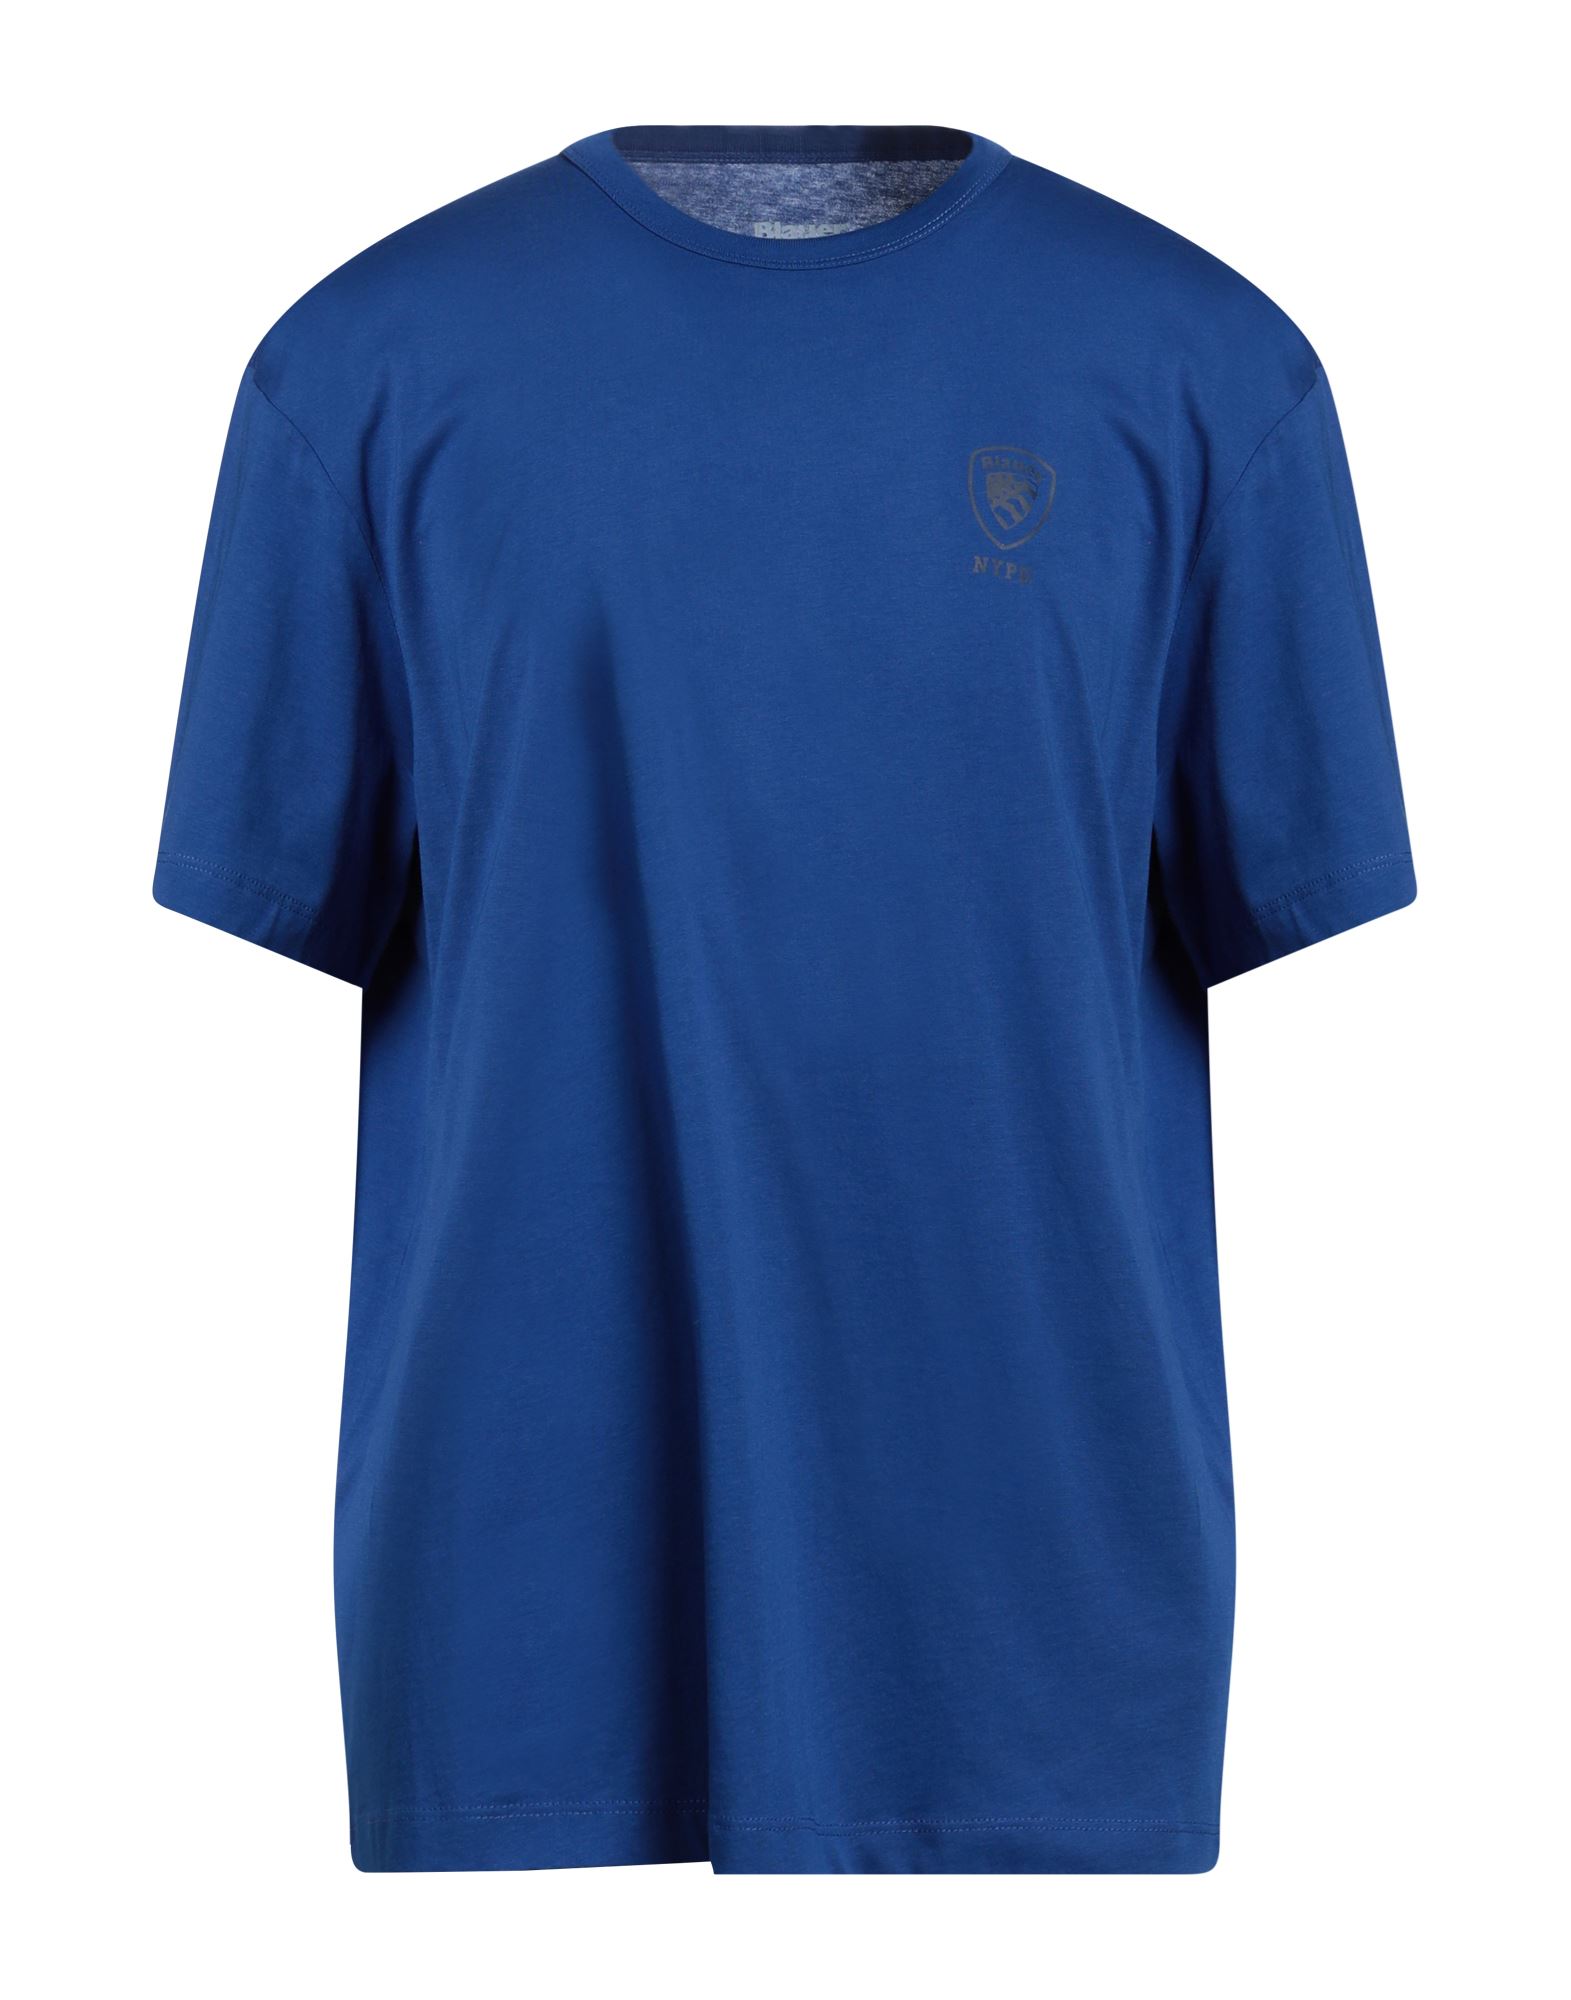 BLAUER T-shirts Herren Blau von BLAUER